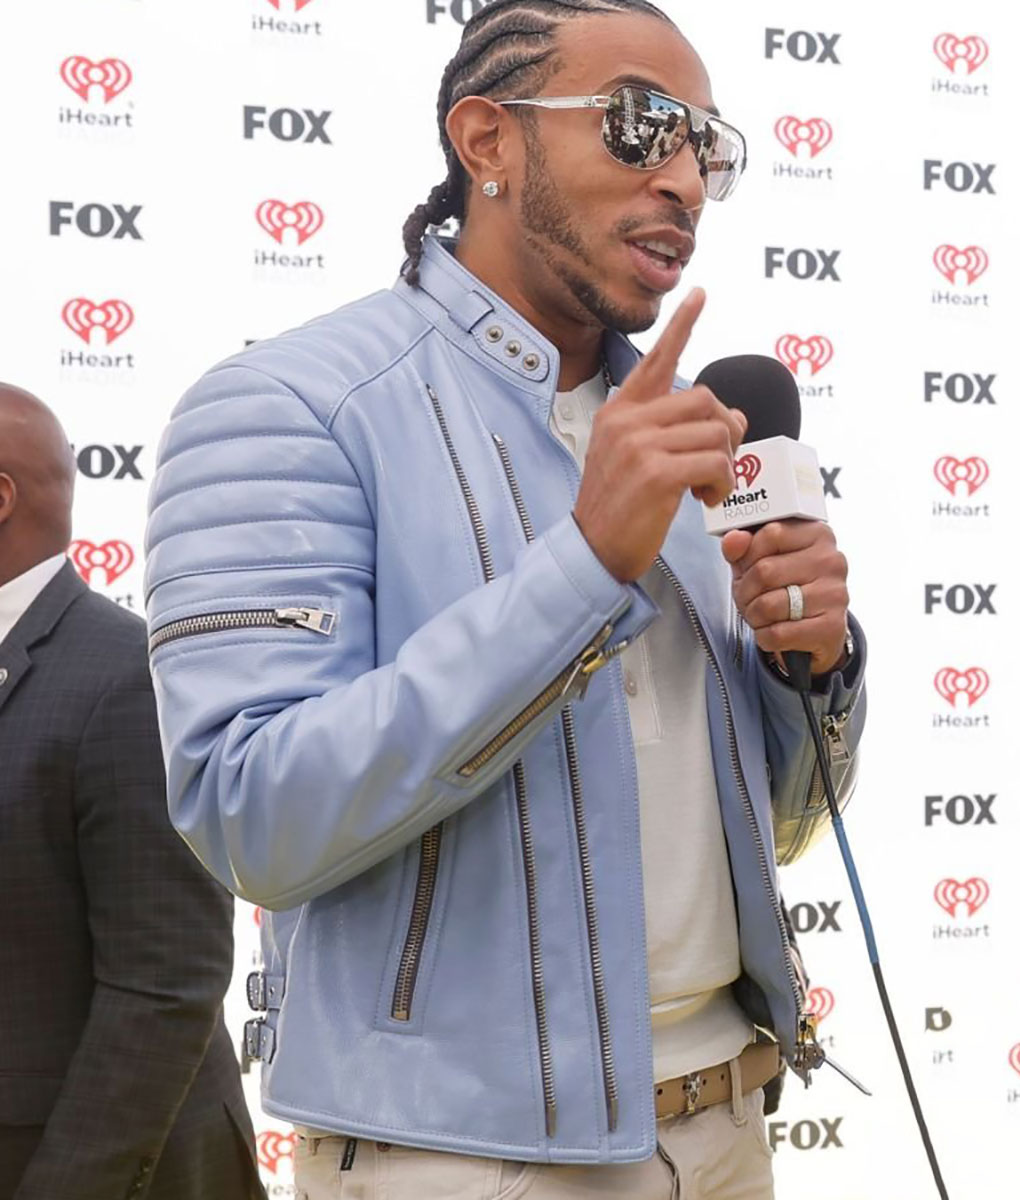 Ludacris iHeartRadio Award Leather Jacket (2)